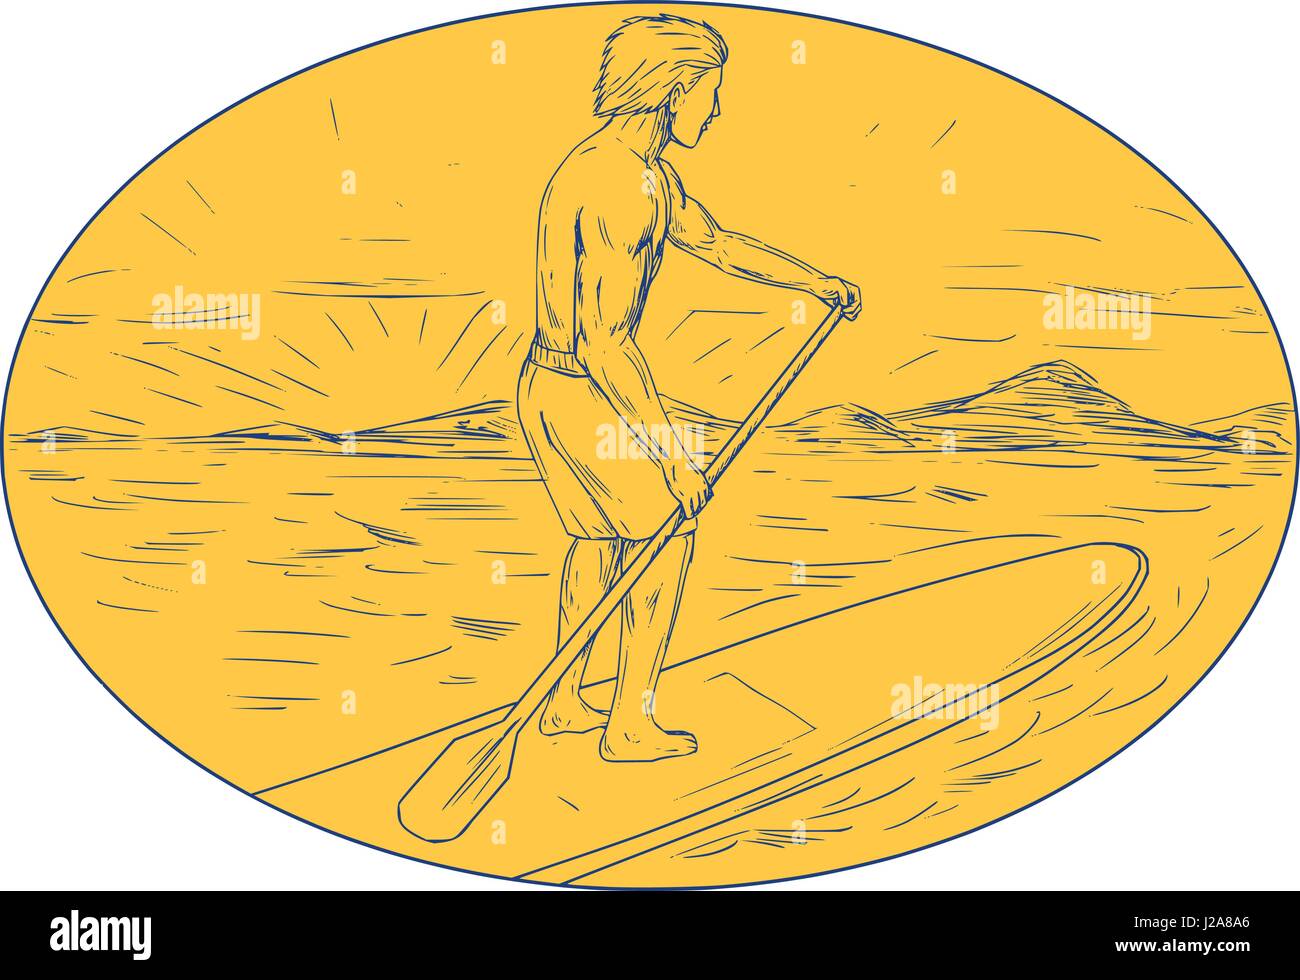 Zeichnung Skizze Stil Abbildung von einem Kumpel auf ein Stand up Paddle Board halten paddeln Ruder mit Insel und Sonnenuntergang im Hintergrund getan Satz innen o Stock Vektor